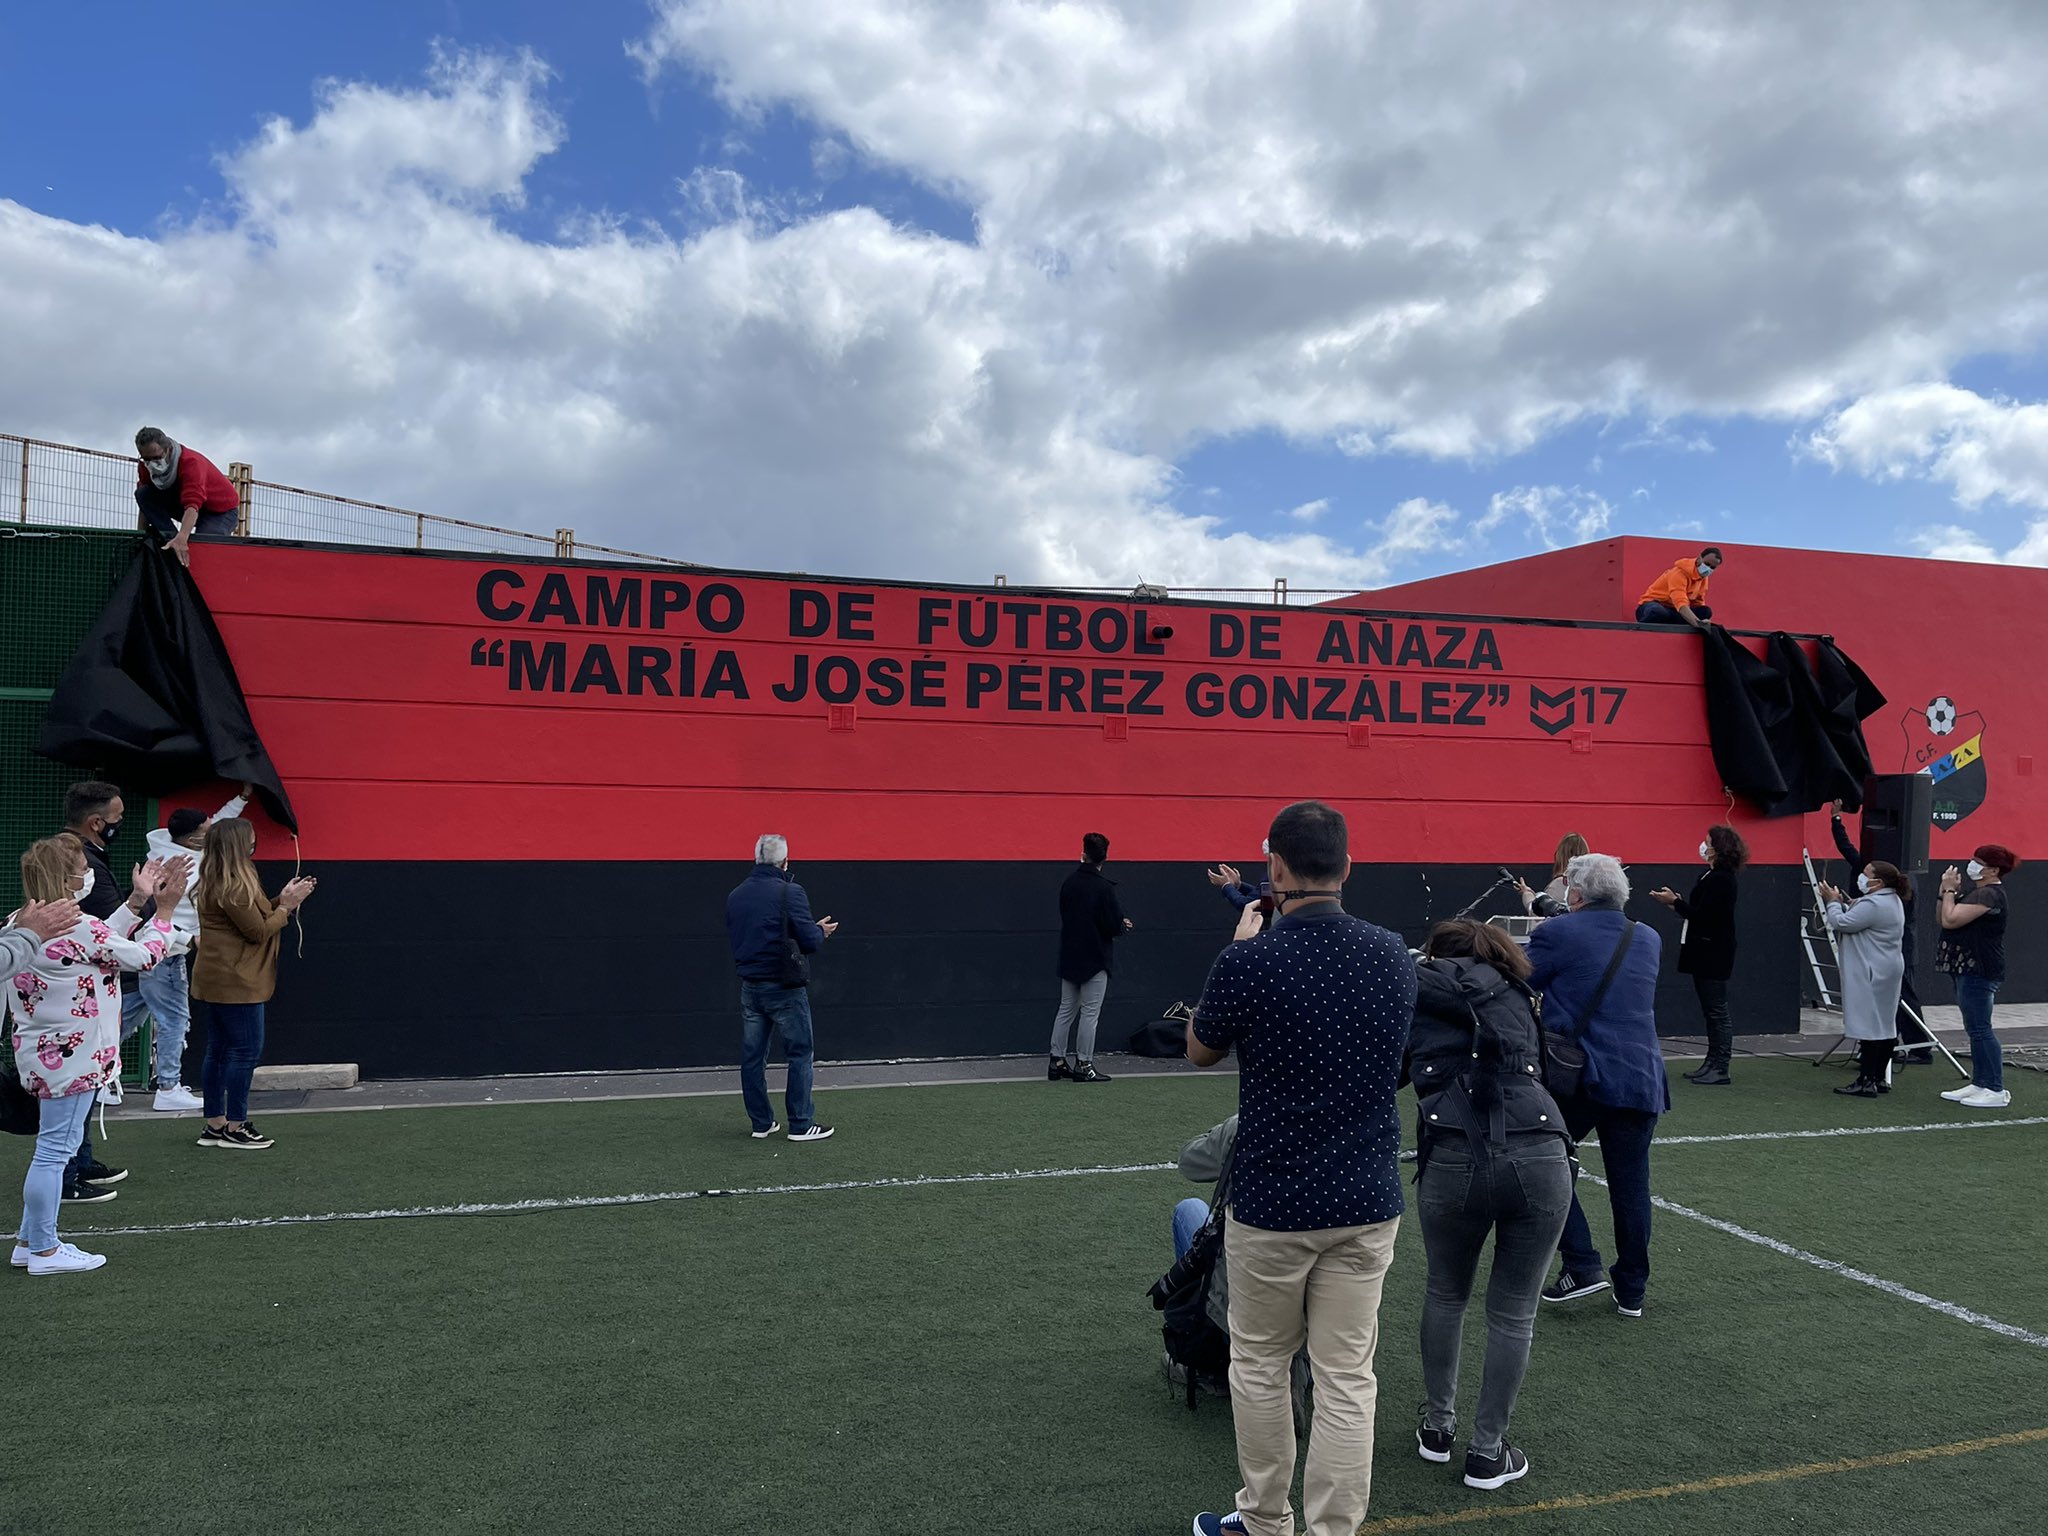 El campo de fútbol “María José Pérez González” ya es una realidad